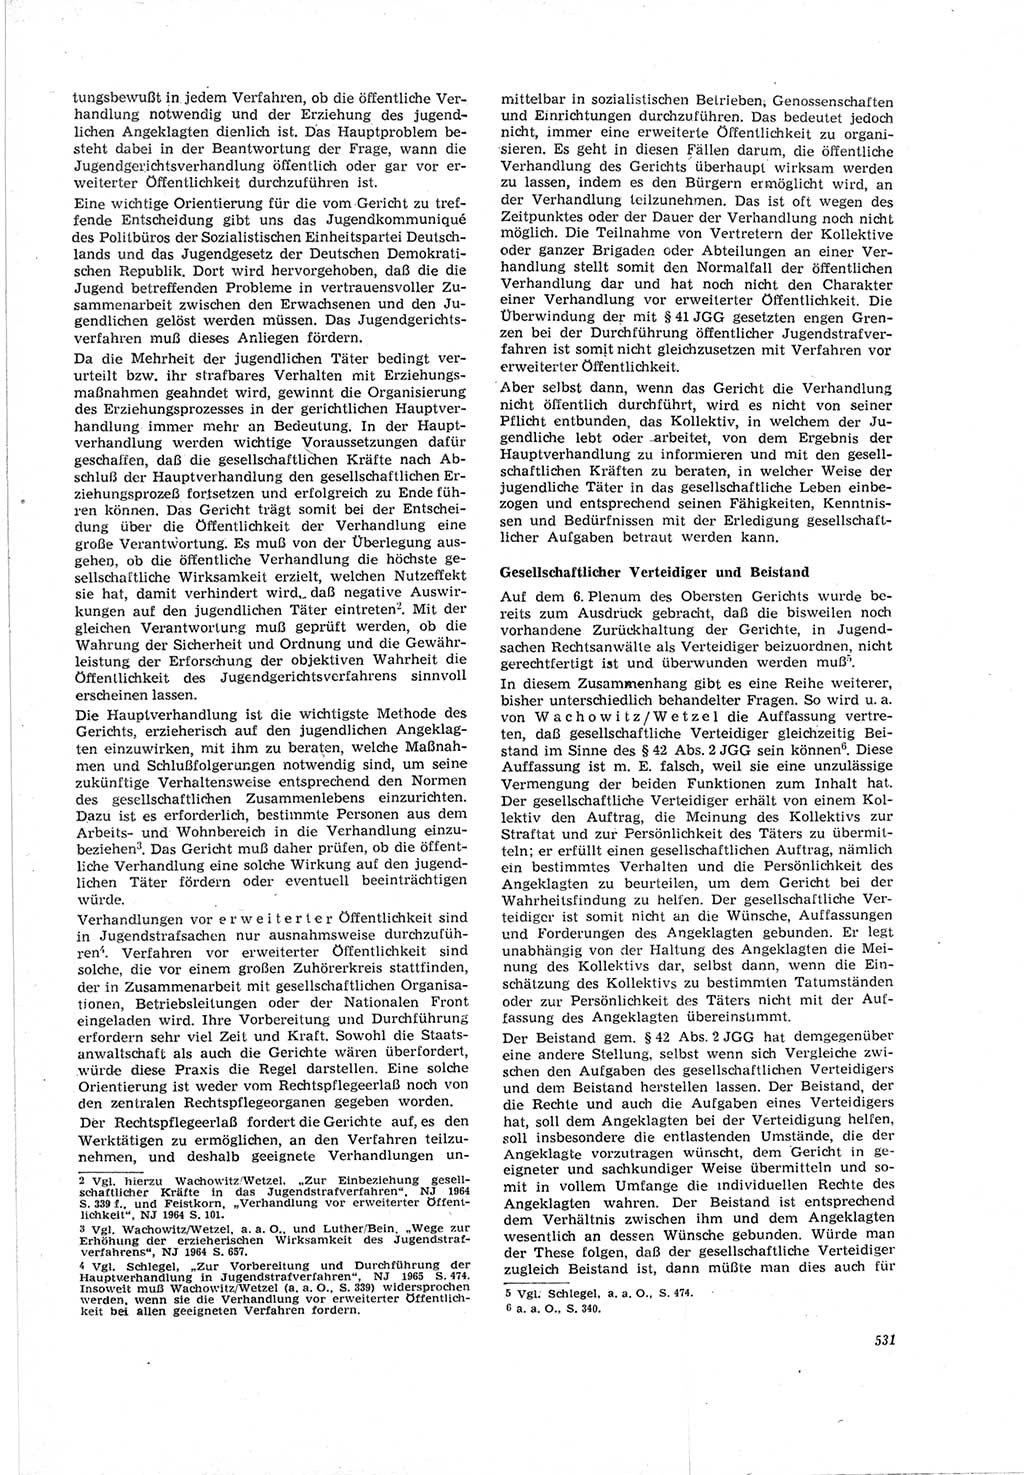 Neue Justiz (NJ), Zeitschrift für Recht und Rechtswissenschaft [Deutsche Demokratische Republik (DDR)], 19. Jahrgang 1965, Seite 531 (NJ DDR 1965, S. 531)